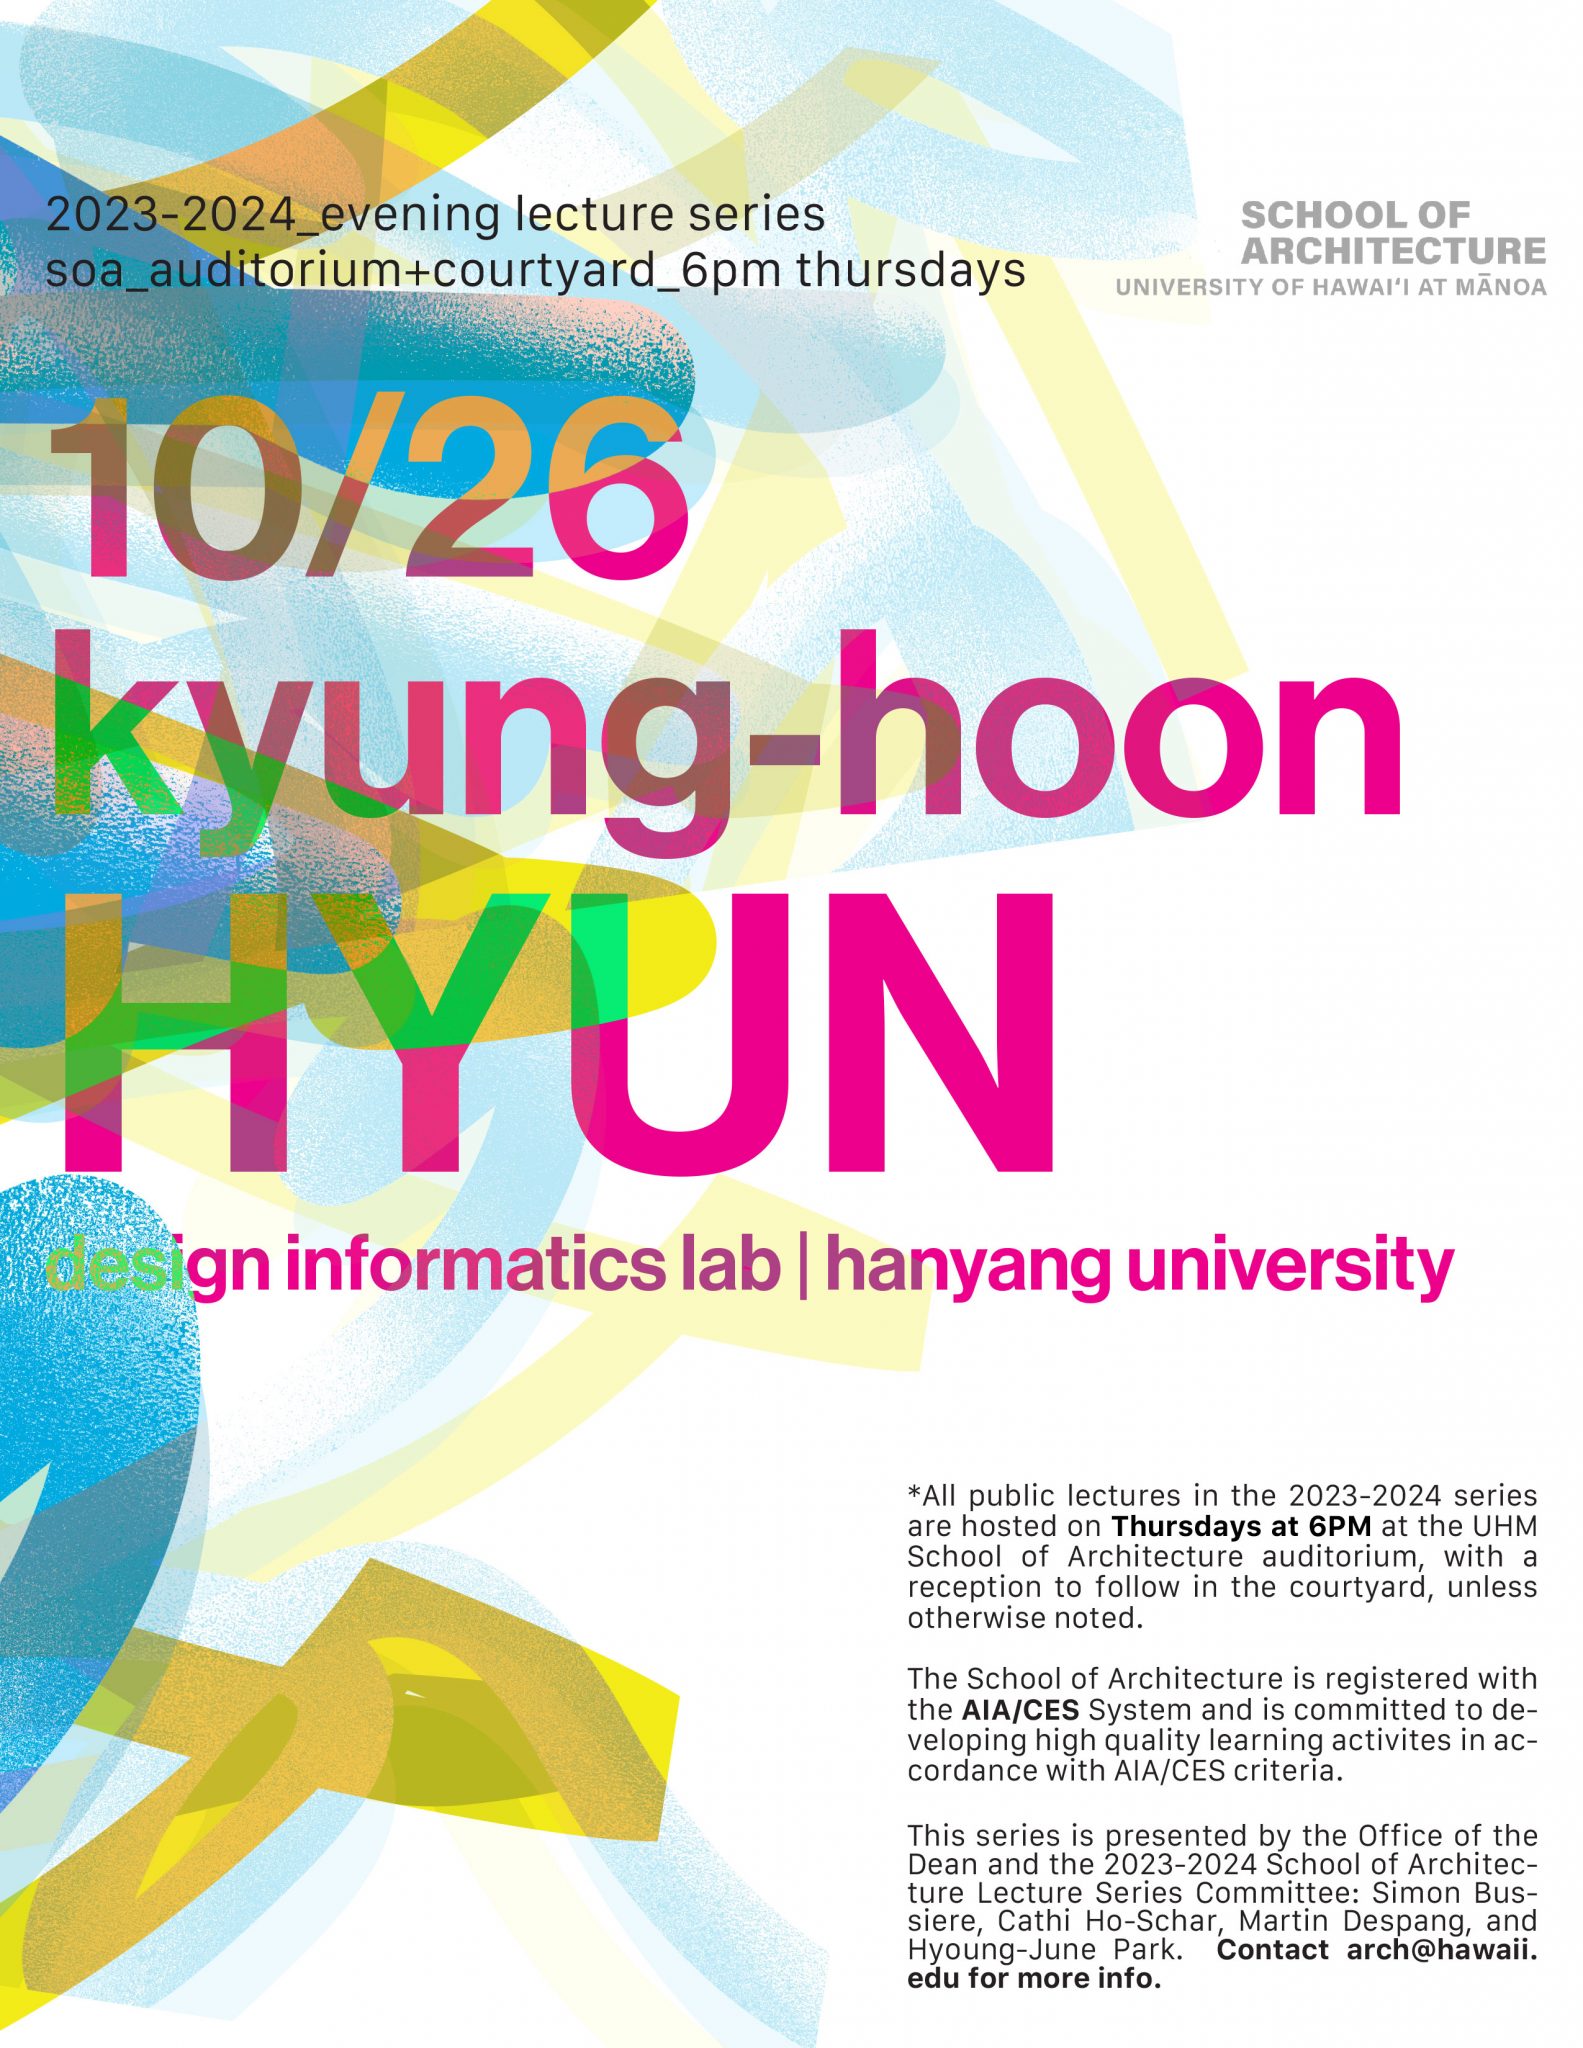 Design Informatics Lab <br><br>At UHM School of Architecture Auditorium <br>10/26 6pm